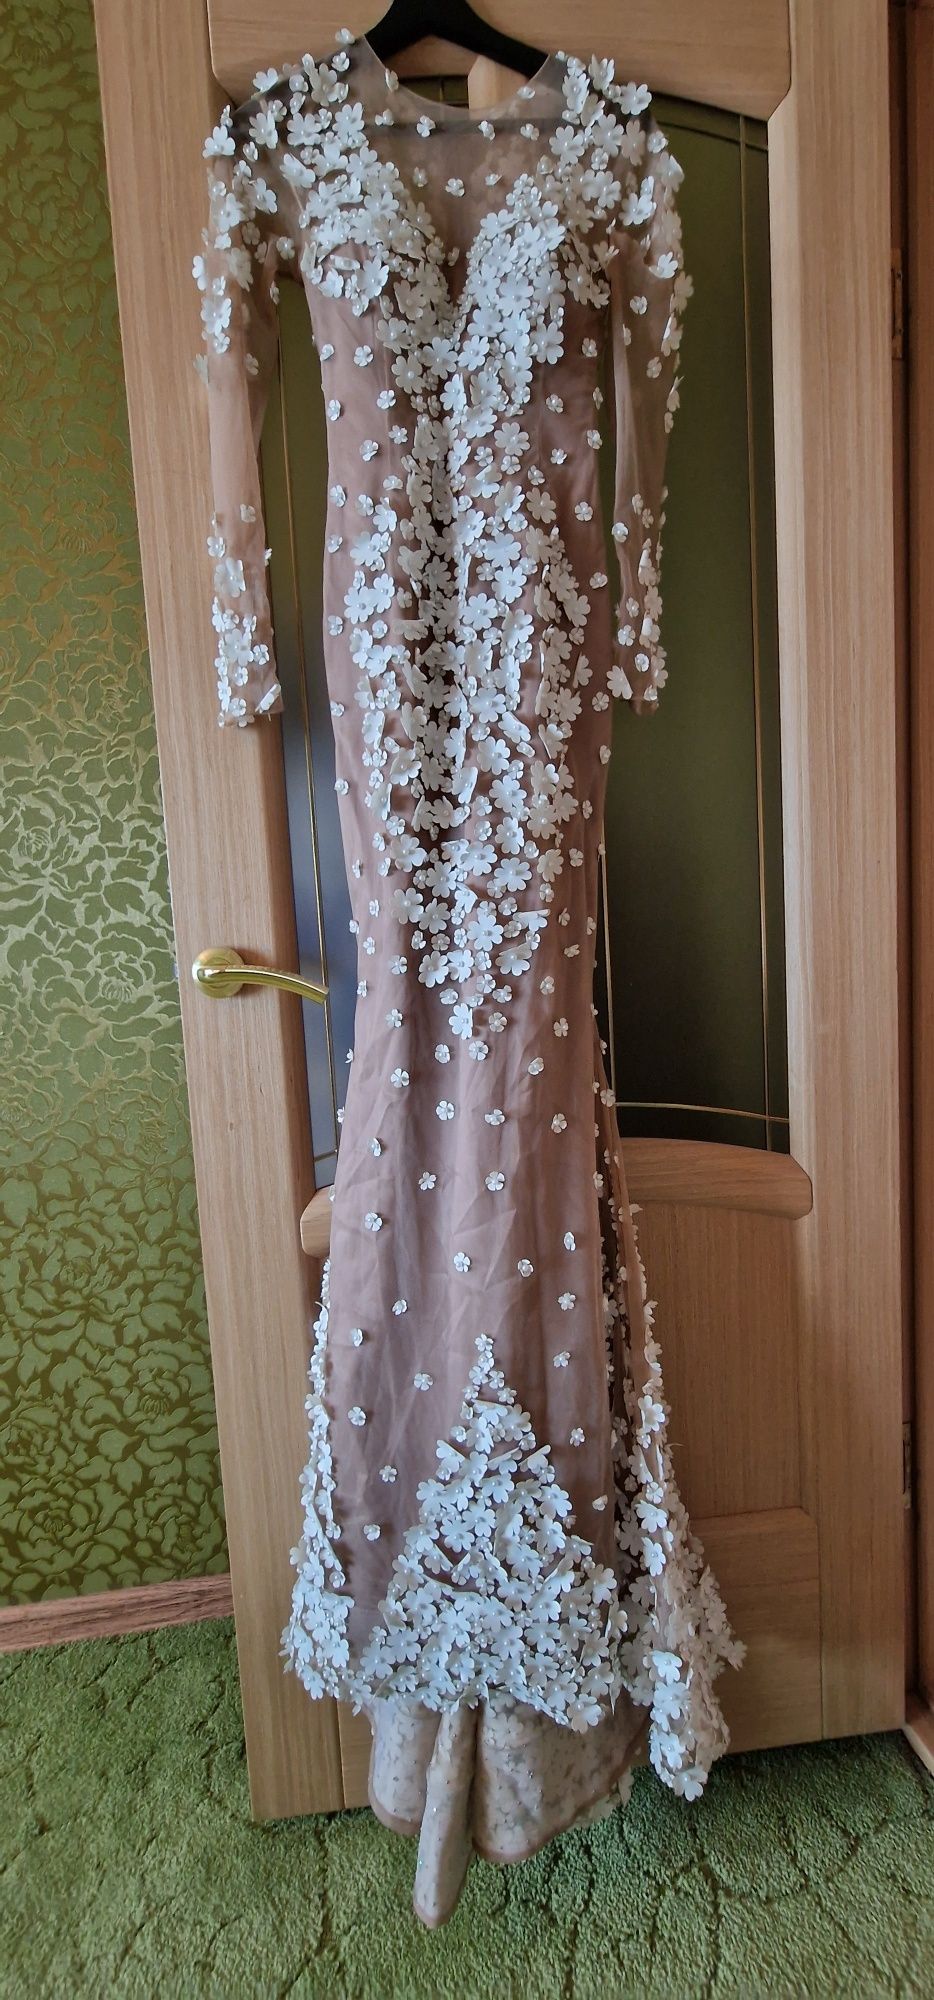 Астана Платье вечерние дизайнерские 42-44размер с шлефом